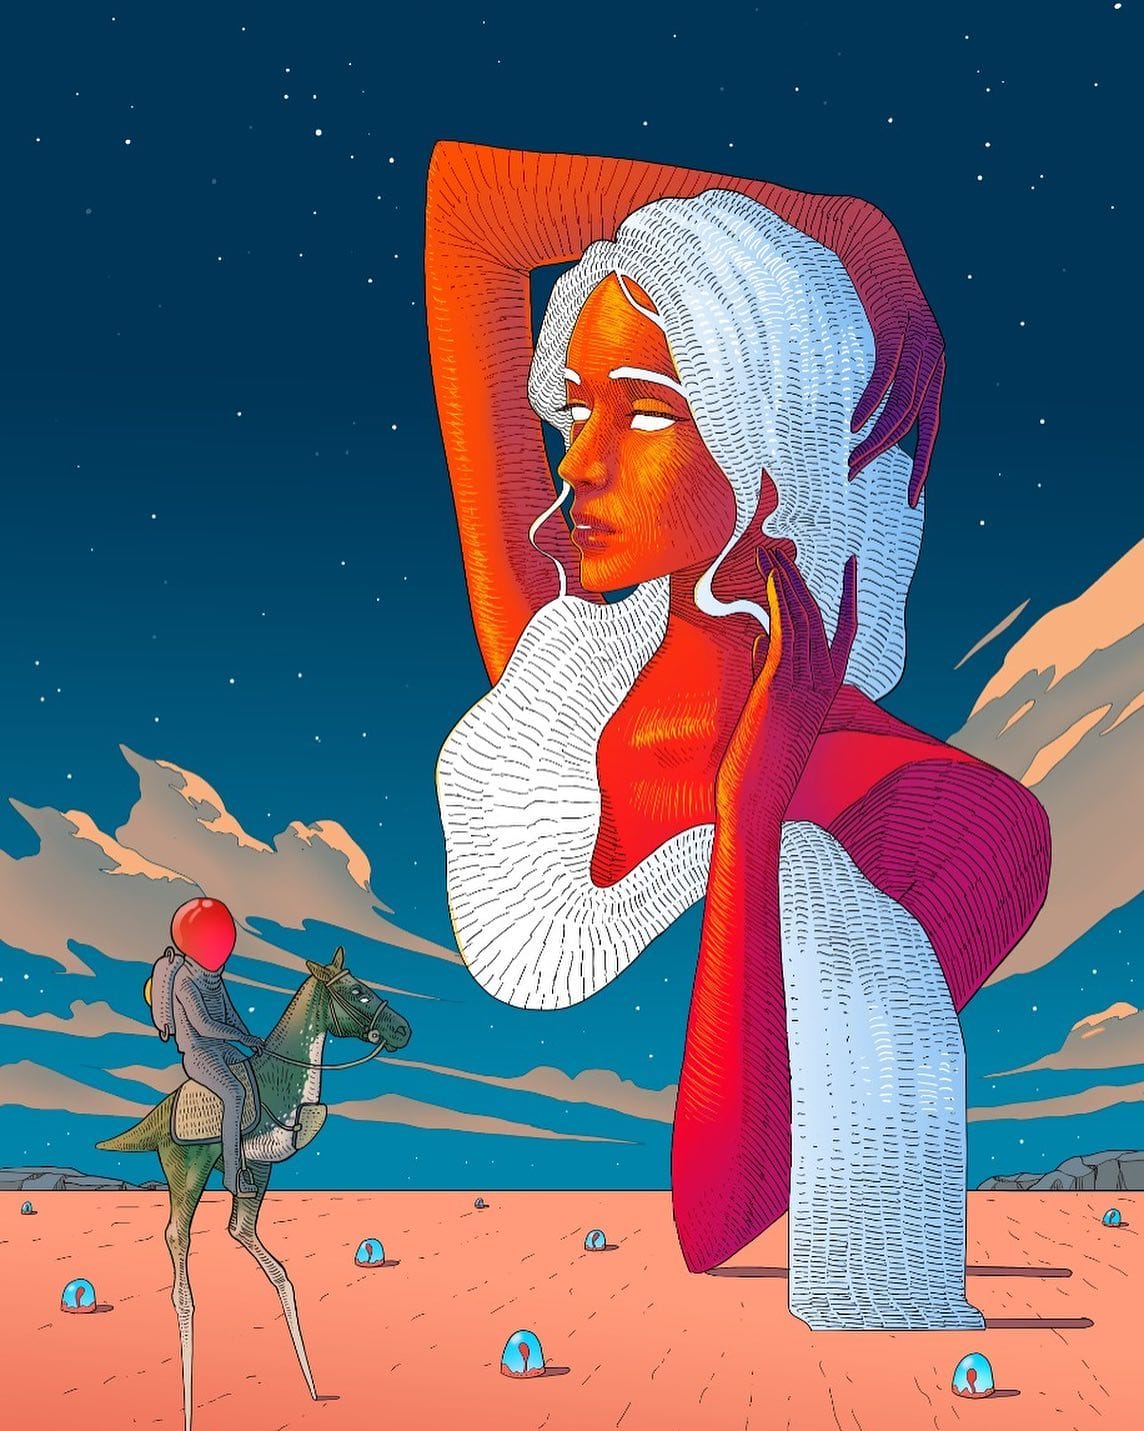 Oeuvre virtuelle représentant le buste d'une femme flottant dans l'espace. Elle a la peau rouge / orange et les cheveux blancs. Sur la terre, une créature à la tête rouge est posé sur un cheval à deux pattes et observe la belle femme dans le ciel.
